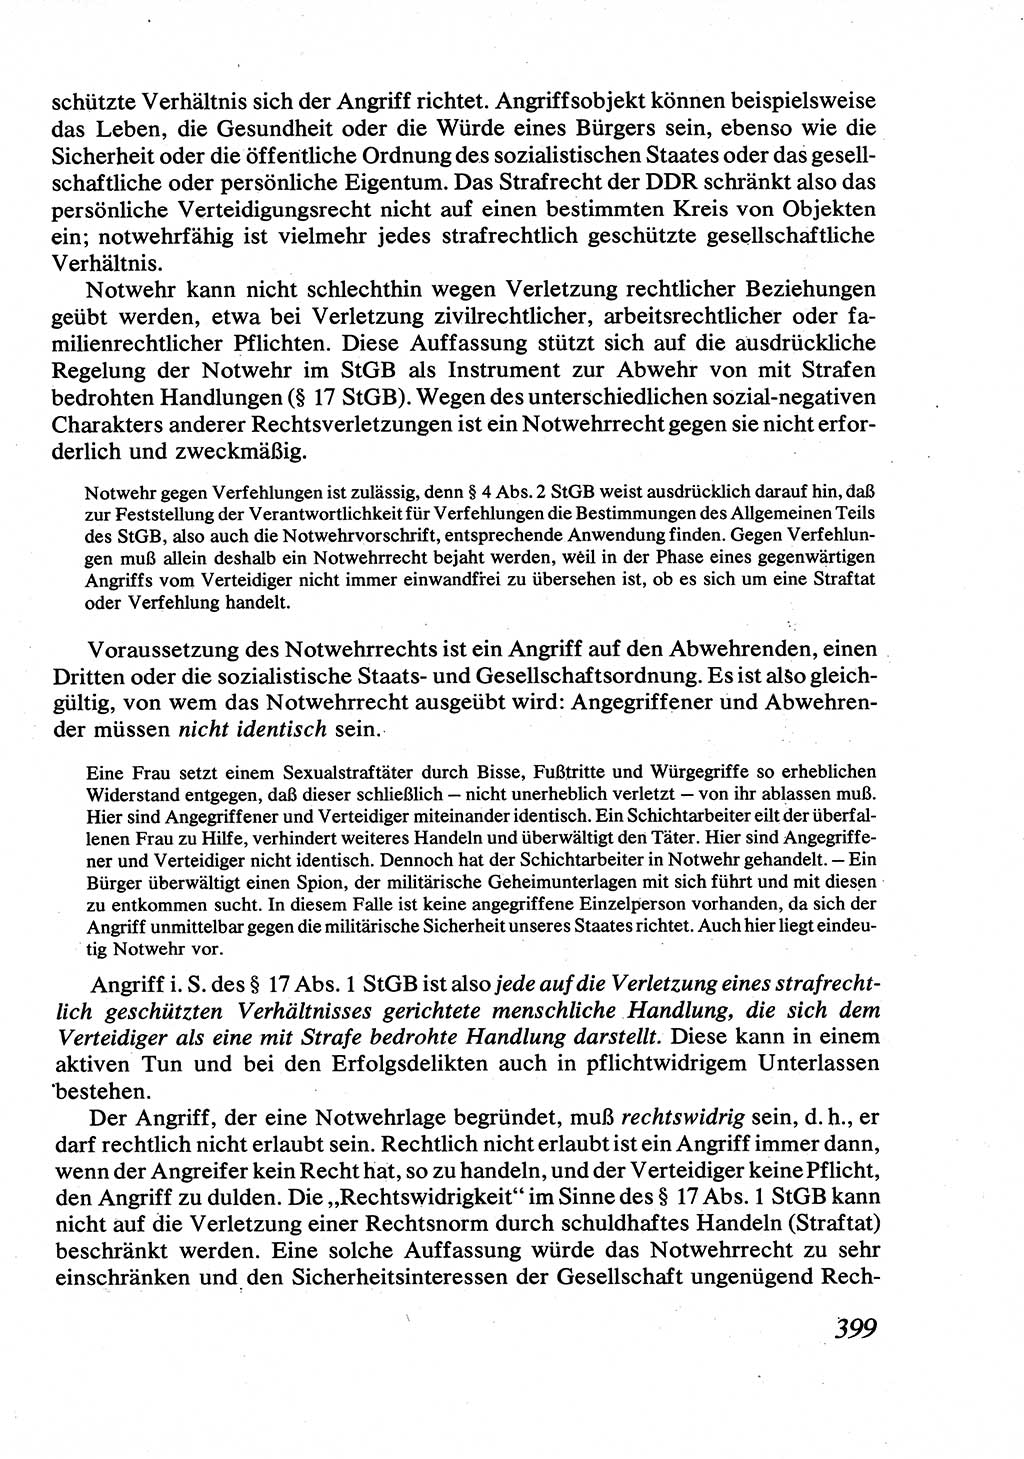 Strafrecht [Deutsche Demokratische Republik (DDR)], Allgemeiner Teil, Lehrbuch 1976, Seite 399 (Strafr. DDR AT Lb. 1976, S. 399)